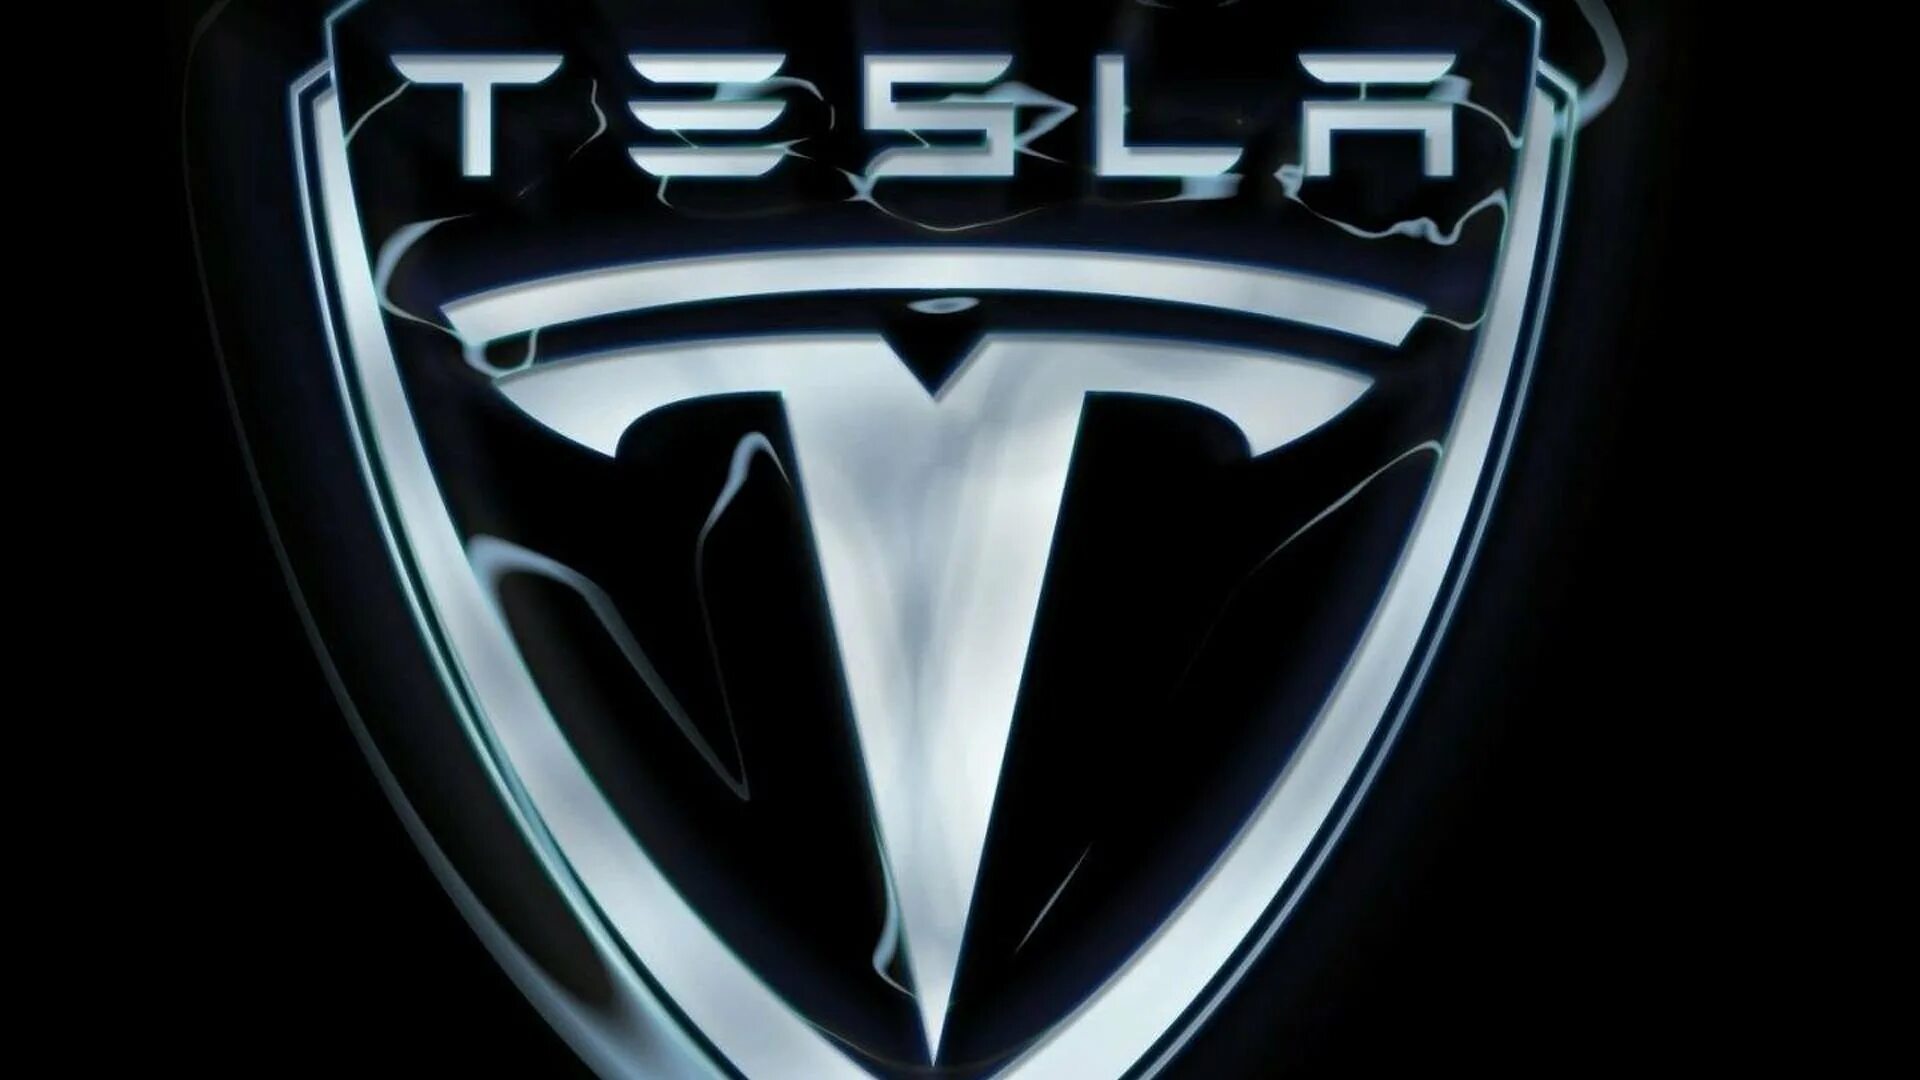 Знак теслы на машине. Тесла значок. Тесла Моторс логотип. Тесла марка автомобиля. Эмблемы КРУТЫХ автомобилей.